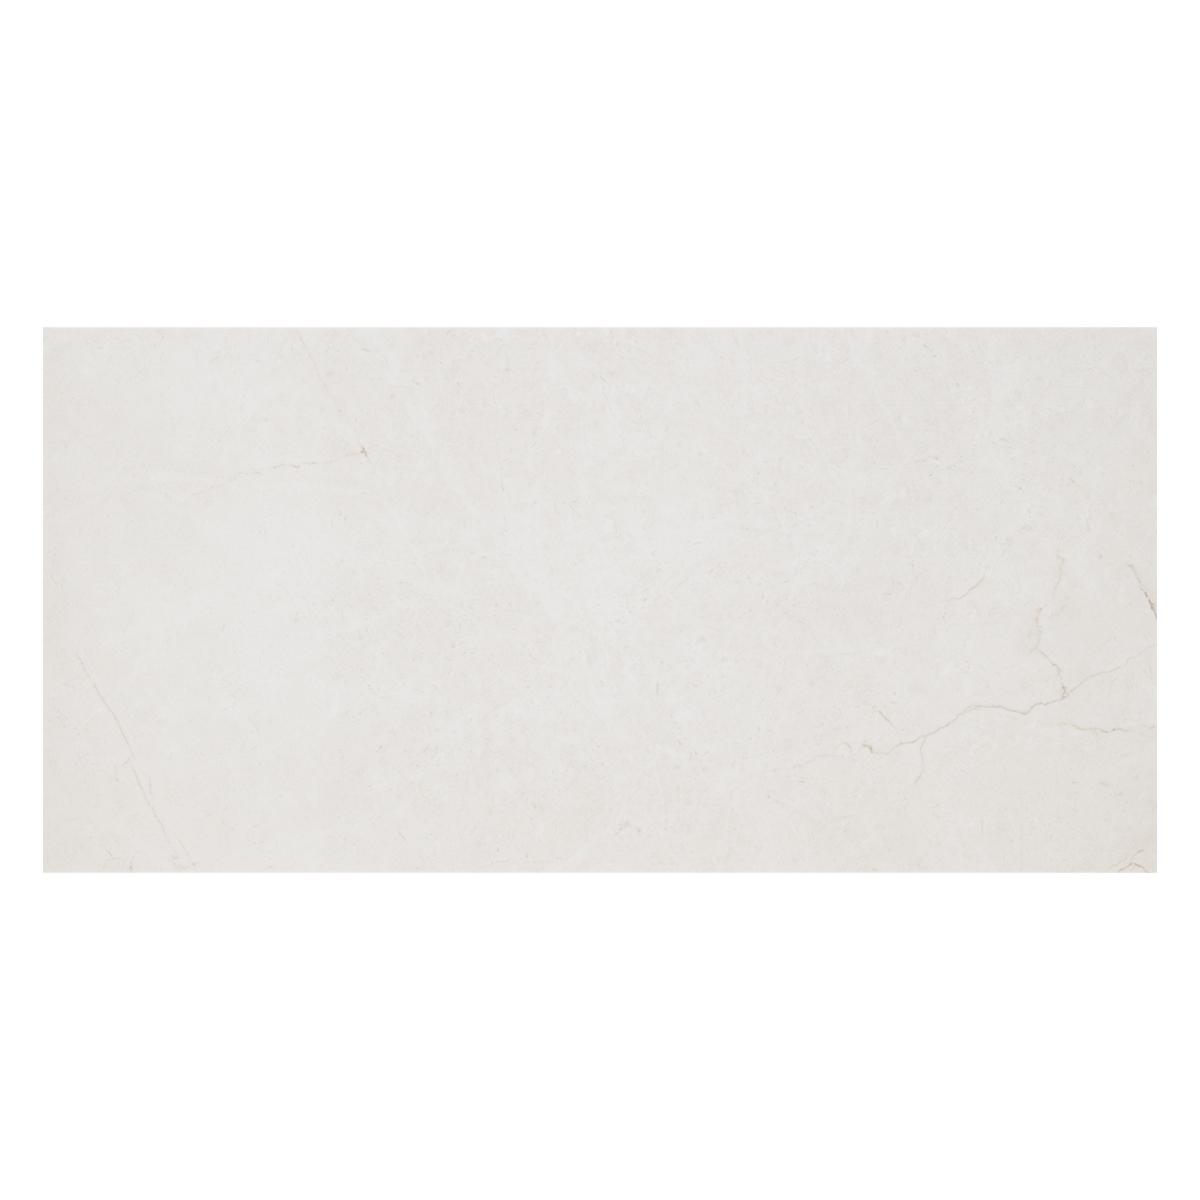 Mayólica Tissue Plane Crema Brillante - 30X60 cm - 1.44 m2